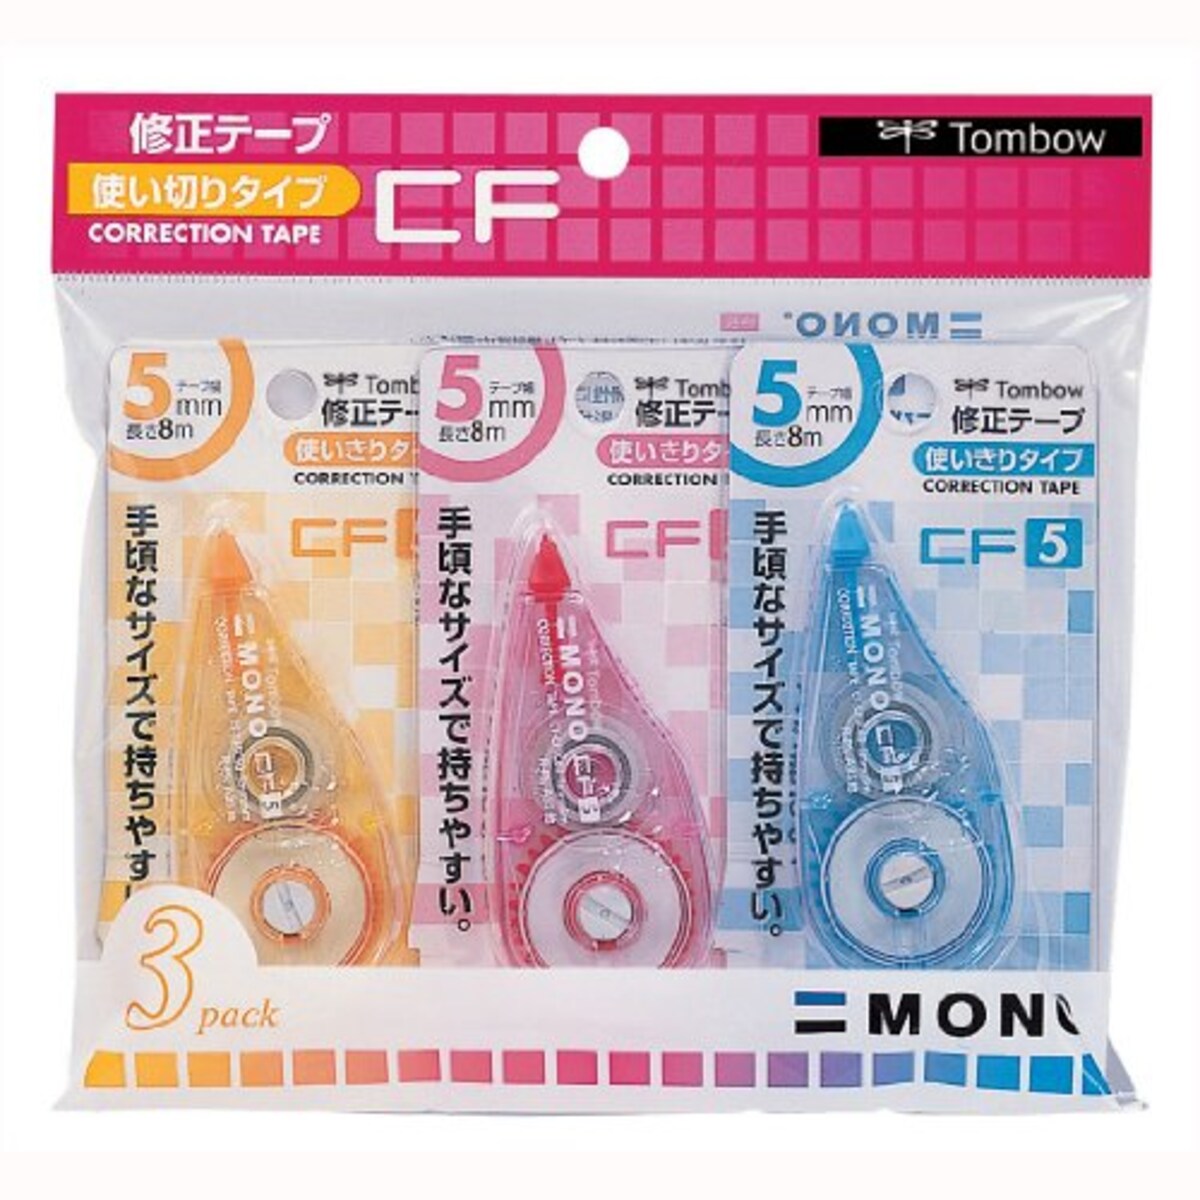 修正テープ MONO CF5